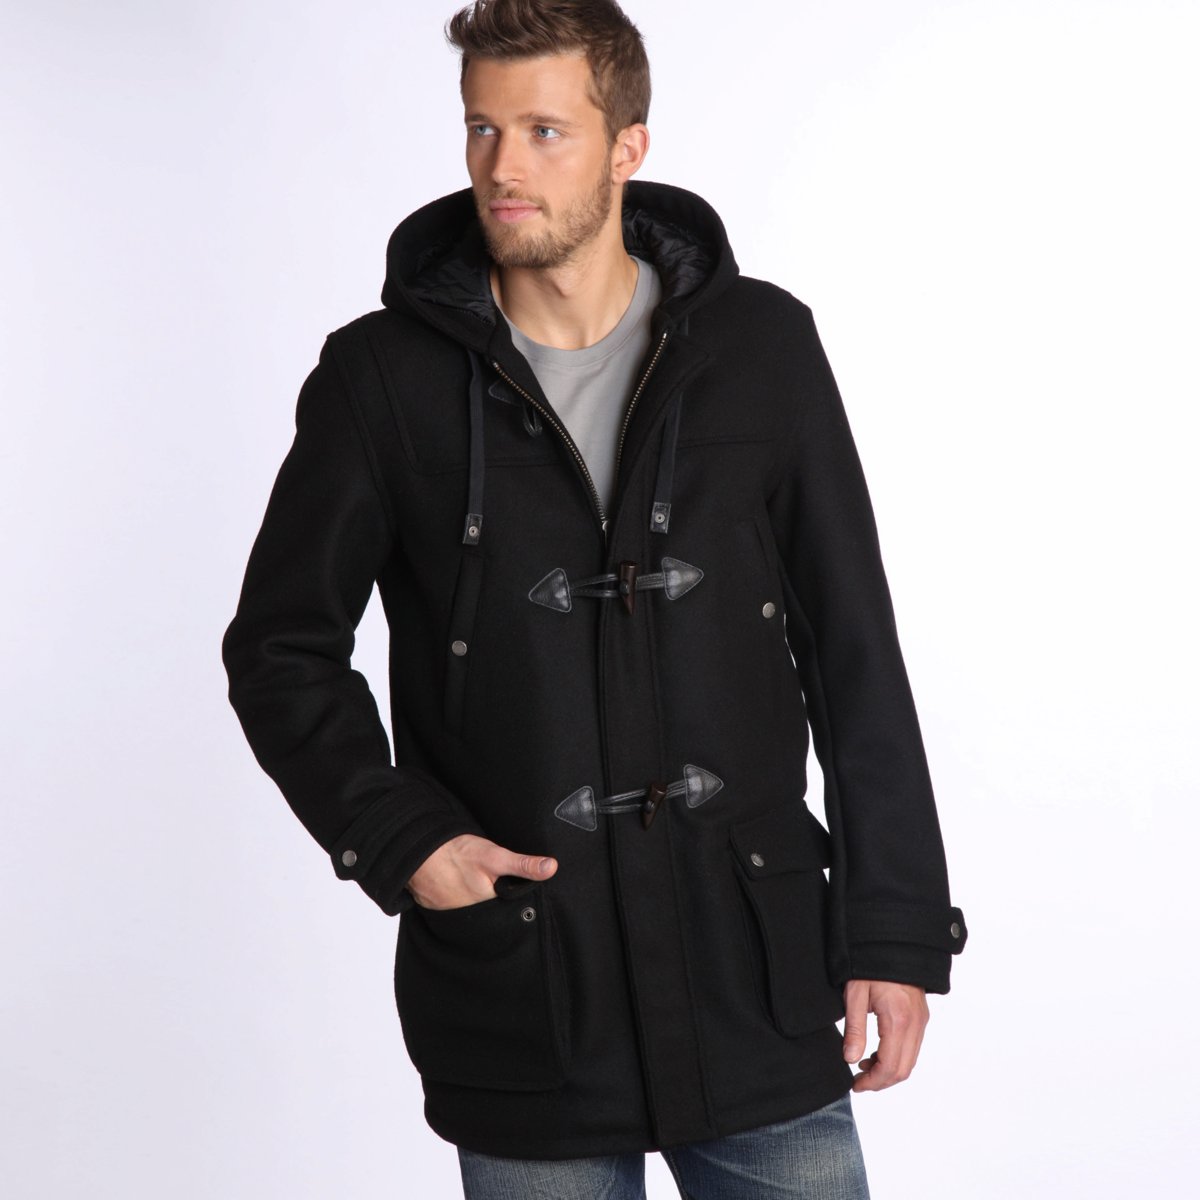 Duffle-coat Homme La Redoute - Duffle-coat à capuche SCHOTT, Schott Prix 219,00 Euros